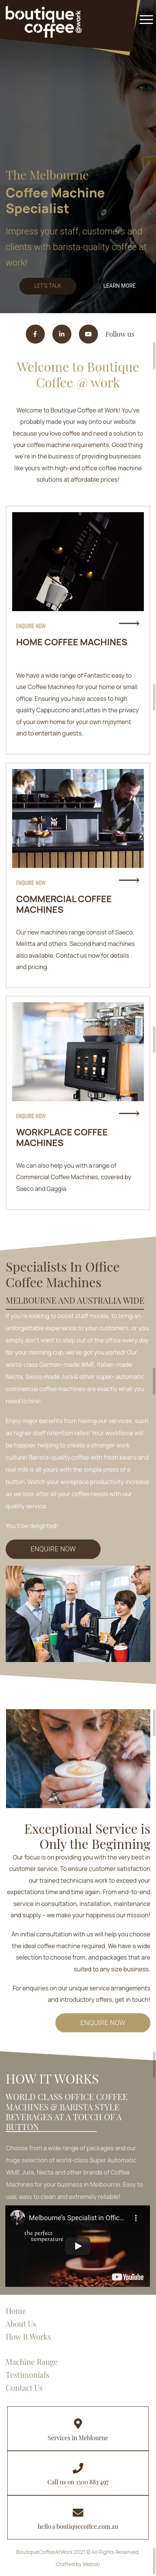 Coffee_Machine_Service_Melbourne_Web-design